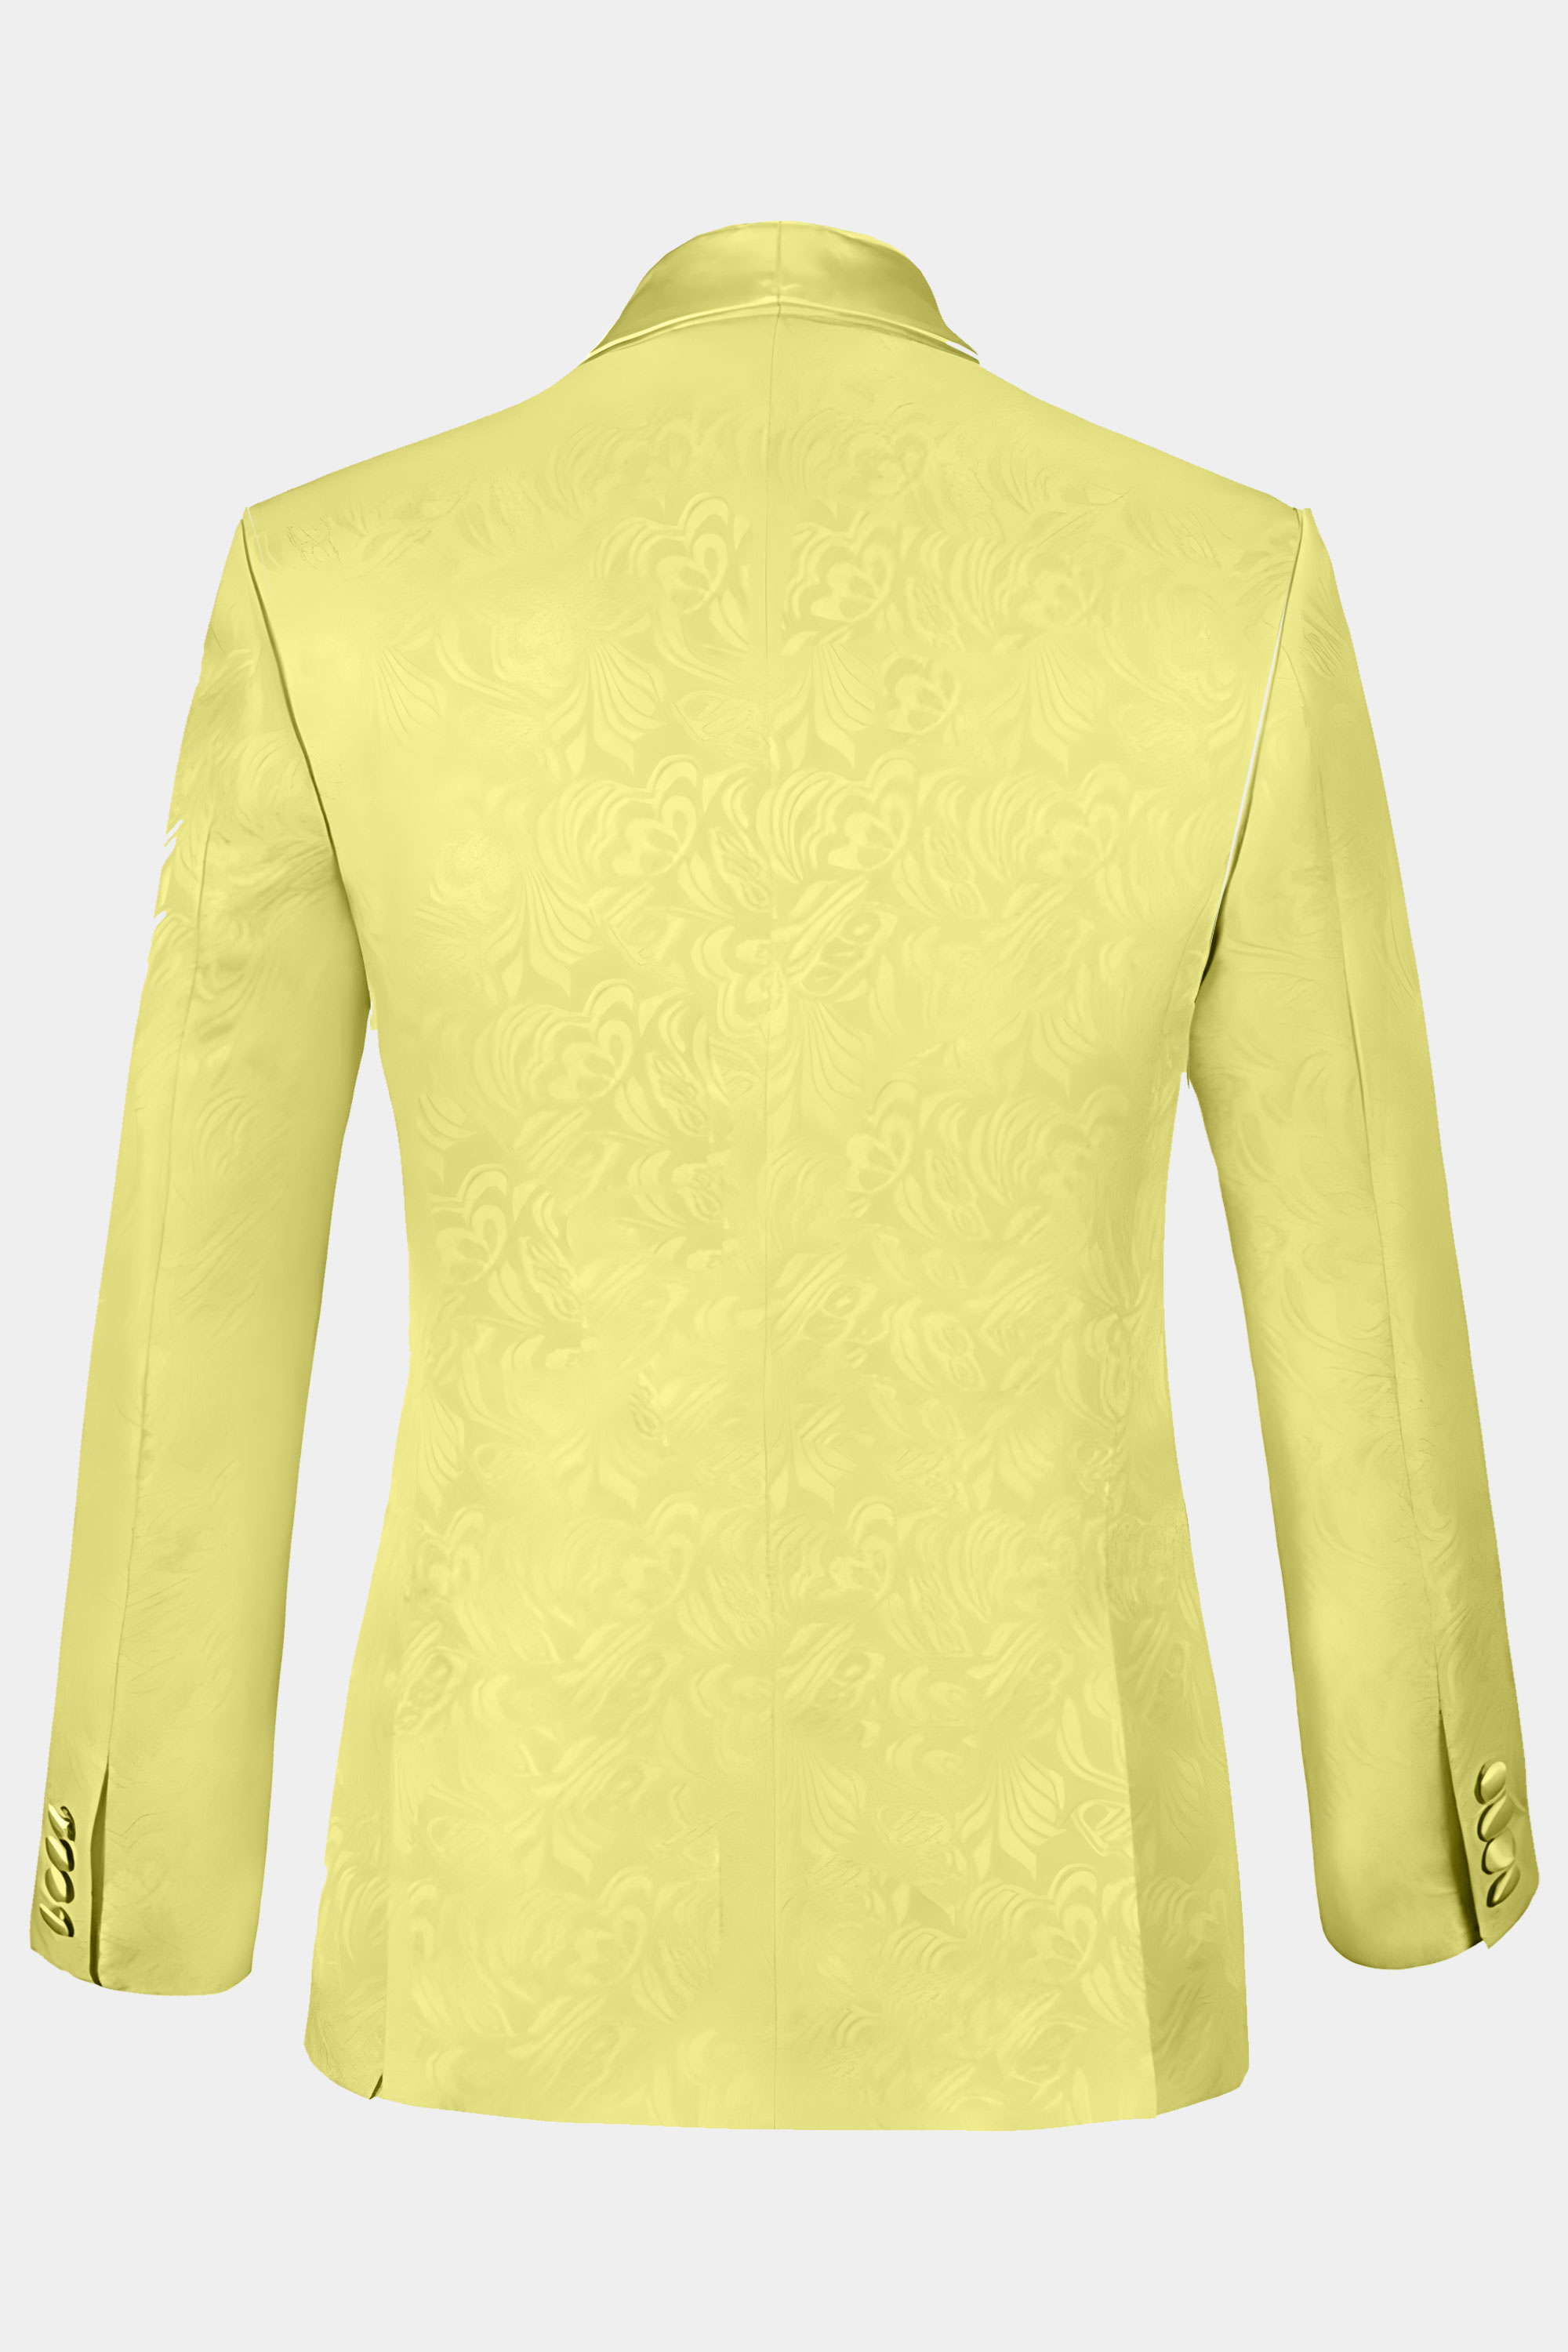 Floral-Yellow-Tuxedo-Jacket-from-Gentlemansguru.com